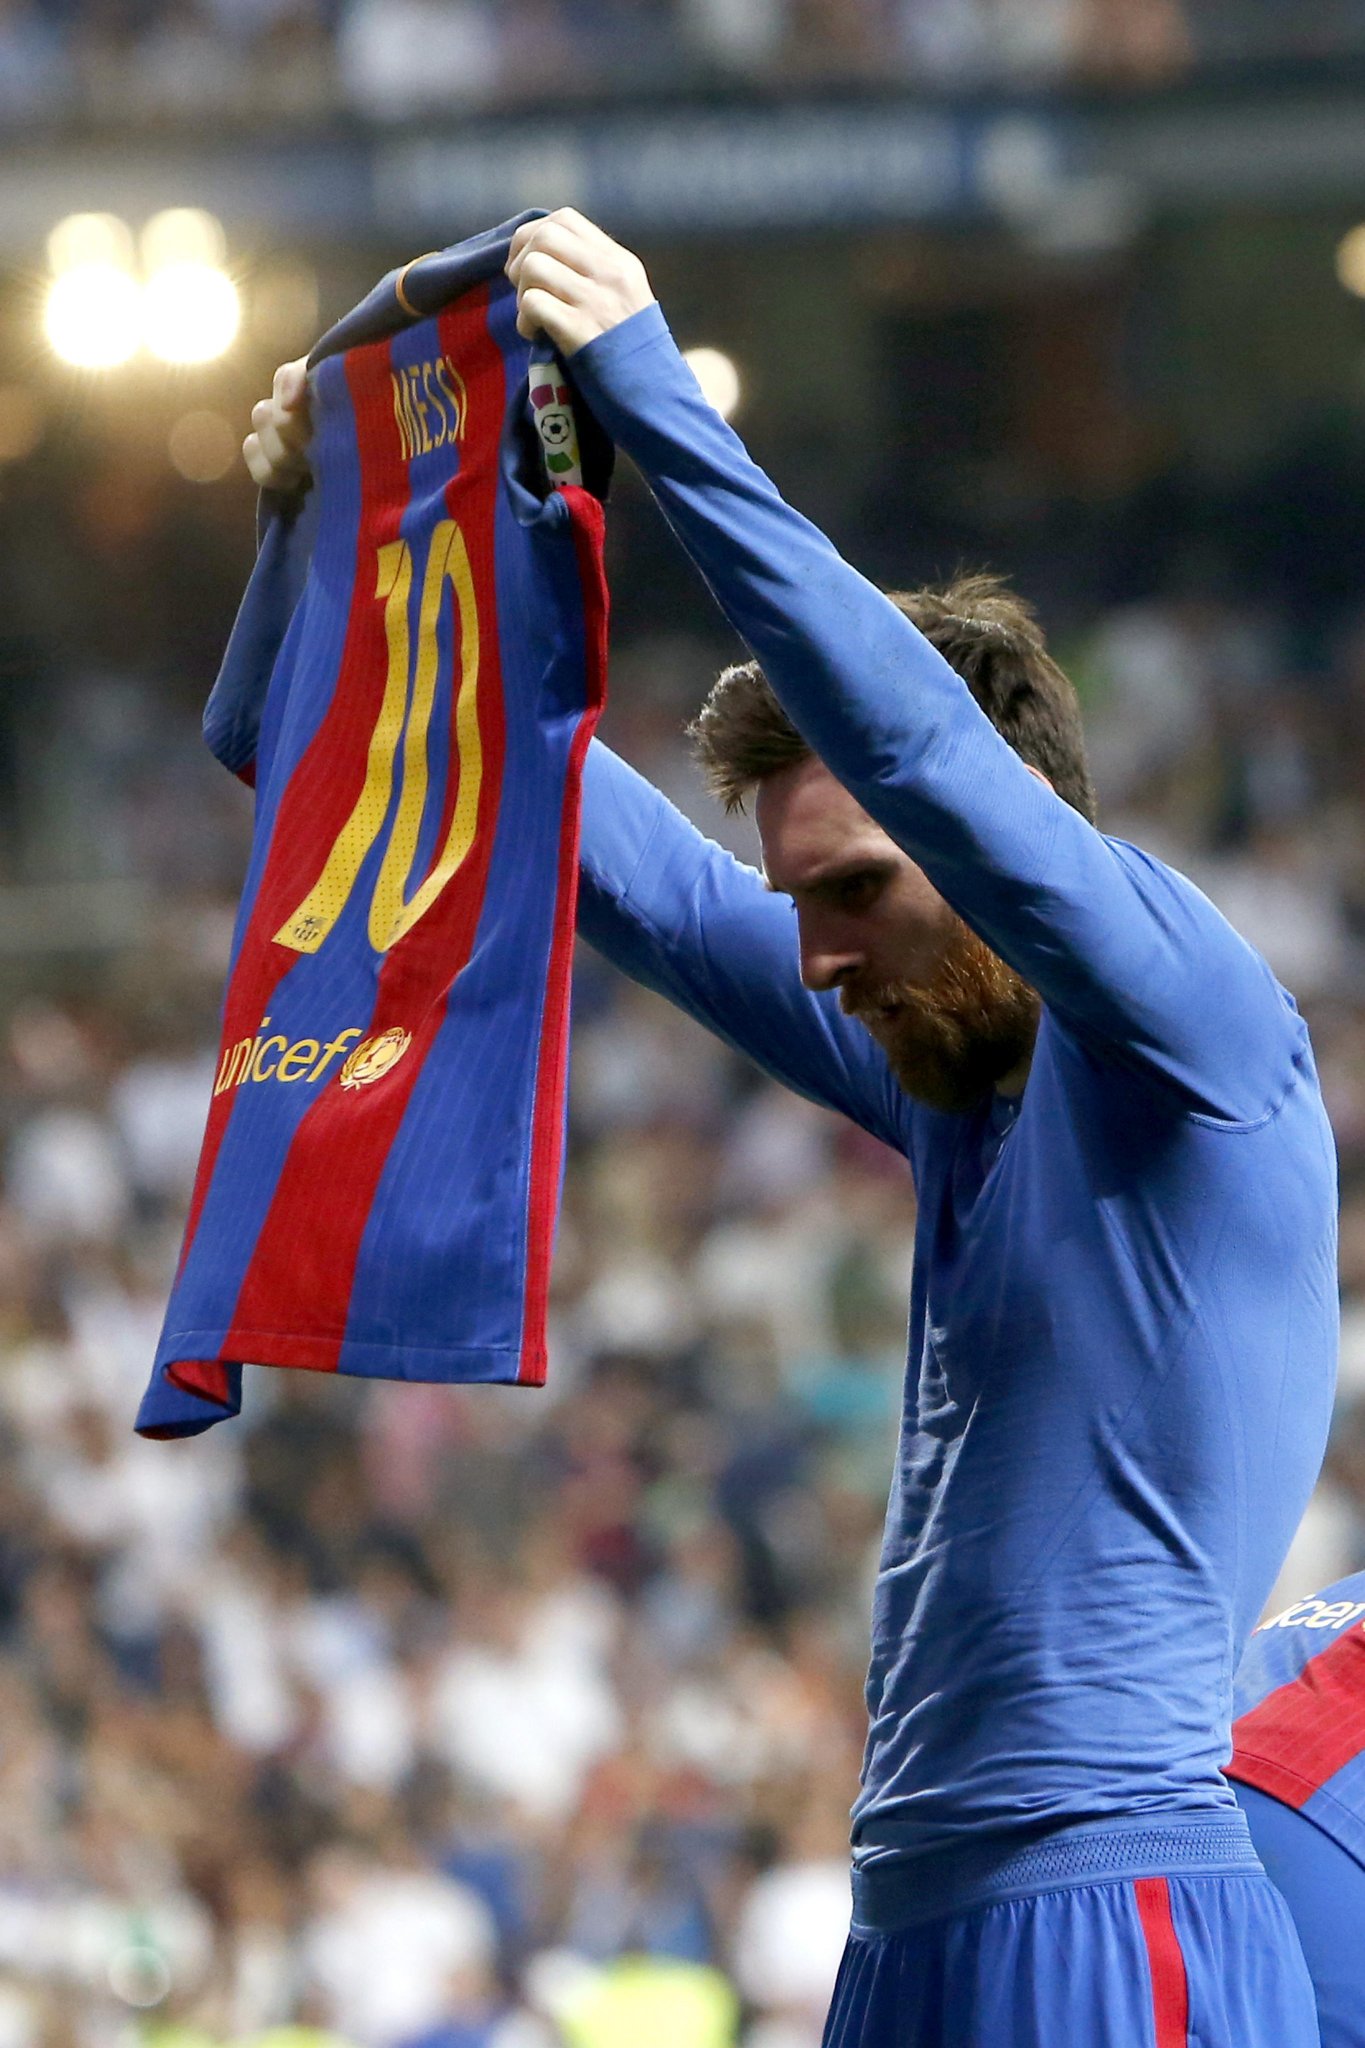 Lionel Messi - một tài năng thực sự trên sân cỏ. Hãy xem hình ảnh liên quan để ngắm nhìn kỹ năng, cú đá và sự điều khiển bóng tuyệt vời của cầu thủ này.